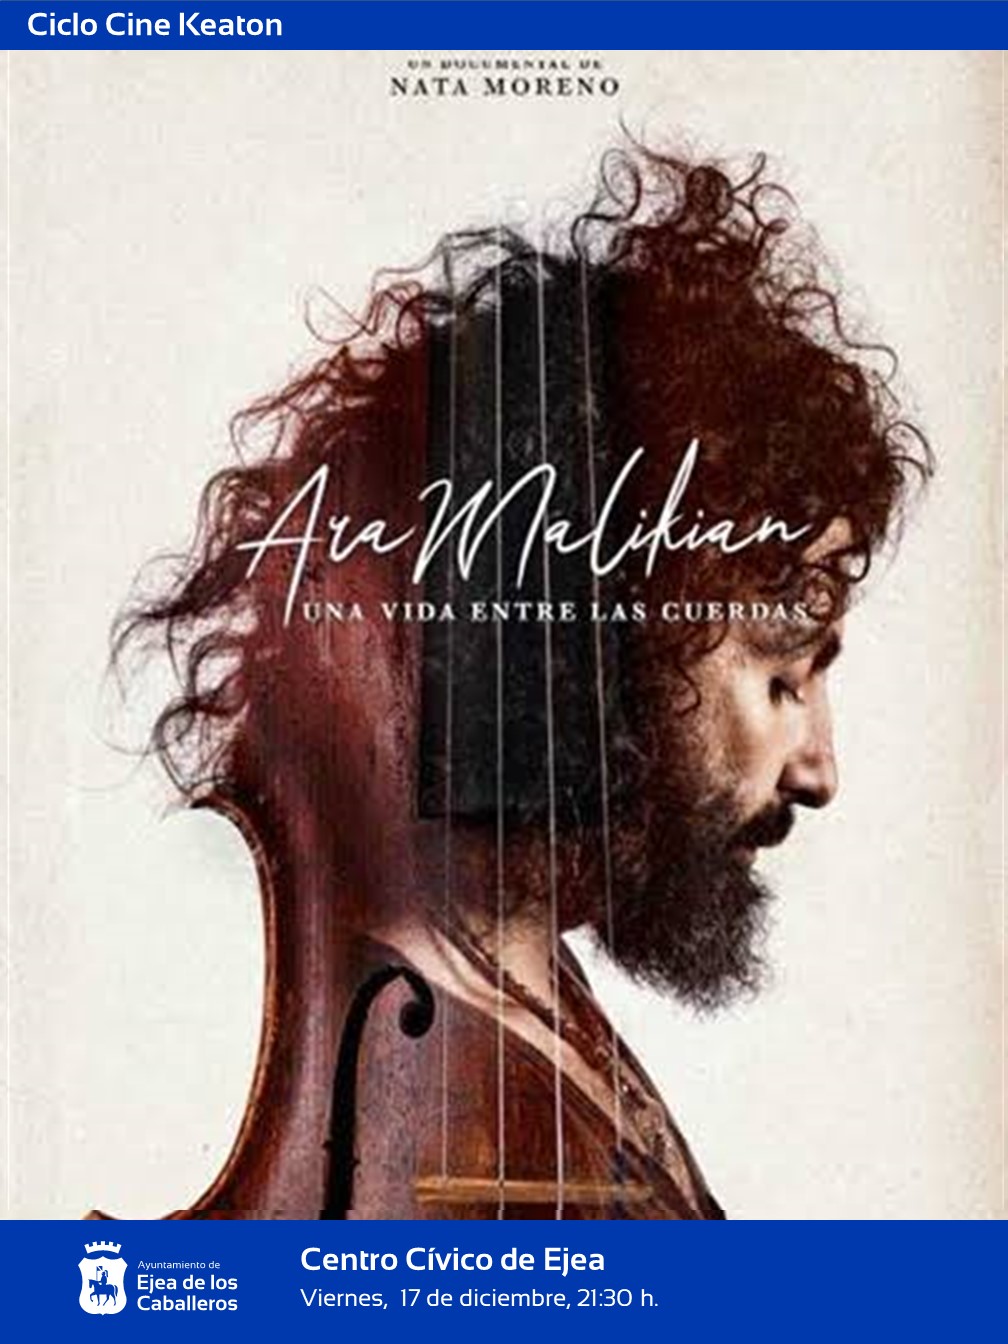 En este momento estás viendo El ciclo Keaton cierra la temporada 2021 con “Ara Malikian, una vida entre las cuerdas”, un documental sobre la trayectoria profesional y personal del gran violinista